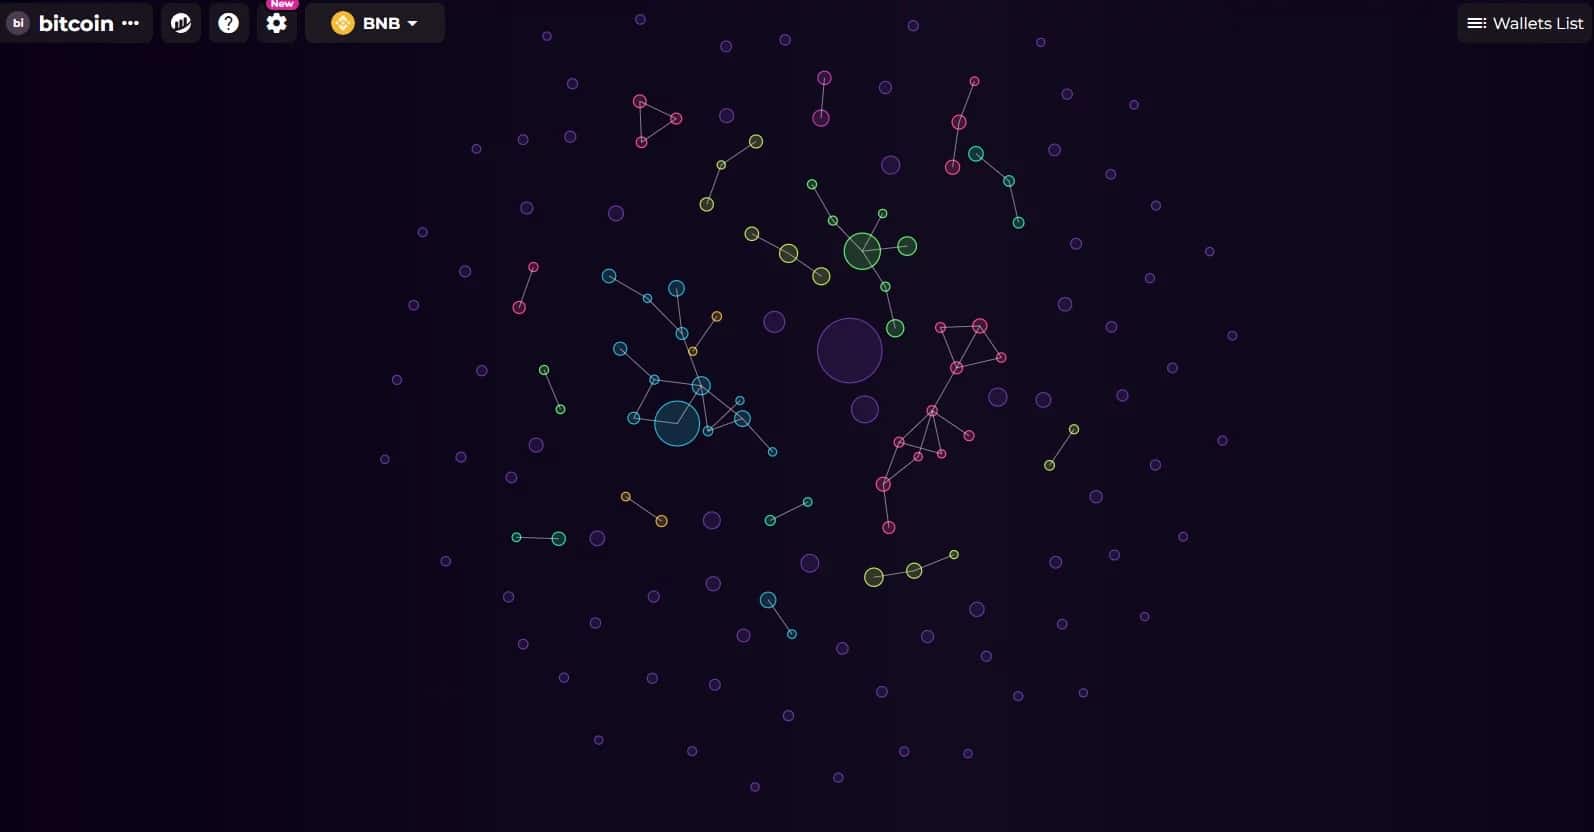 Schermata di Bubblemap che rappresenta i principali possessori di Bitcoin e le loro interazioni